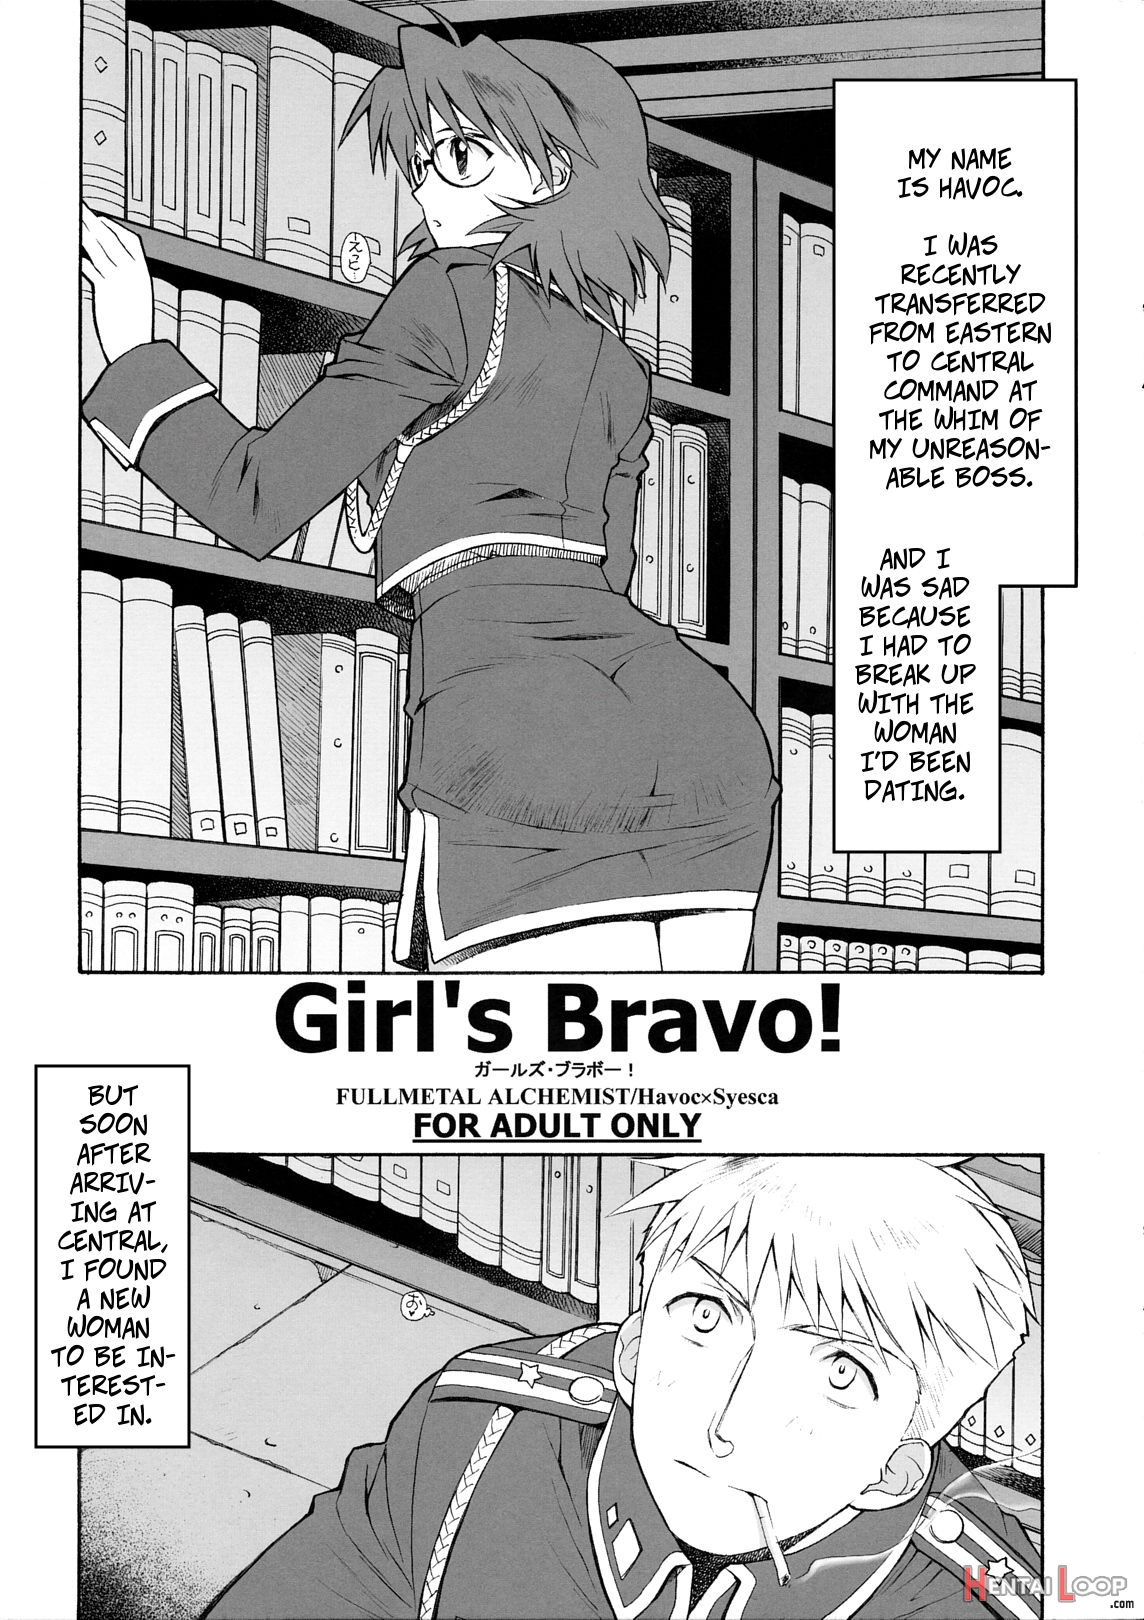 Girl's Bravo! page 1